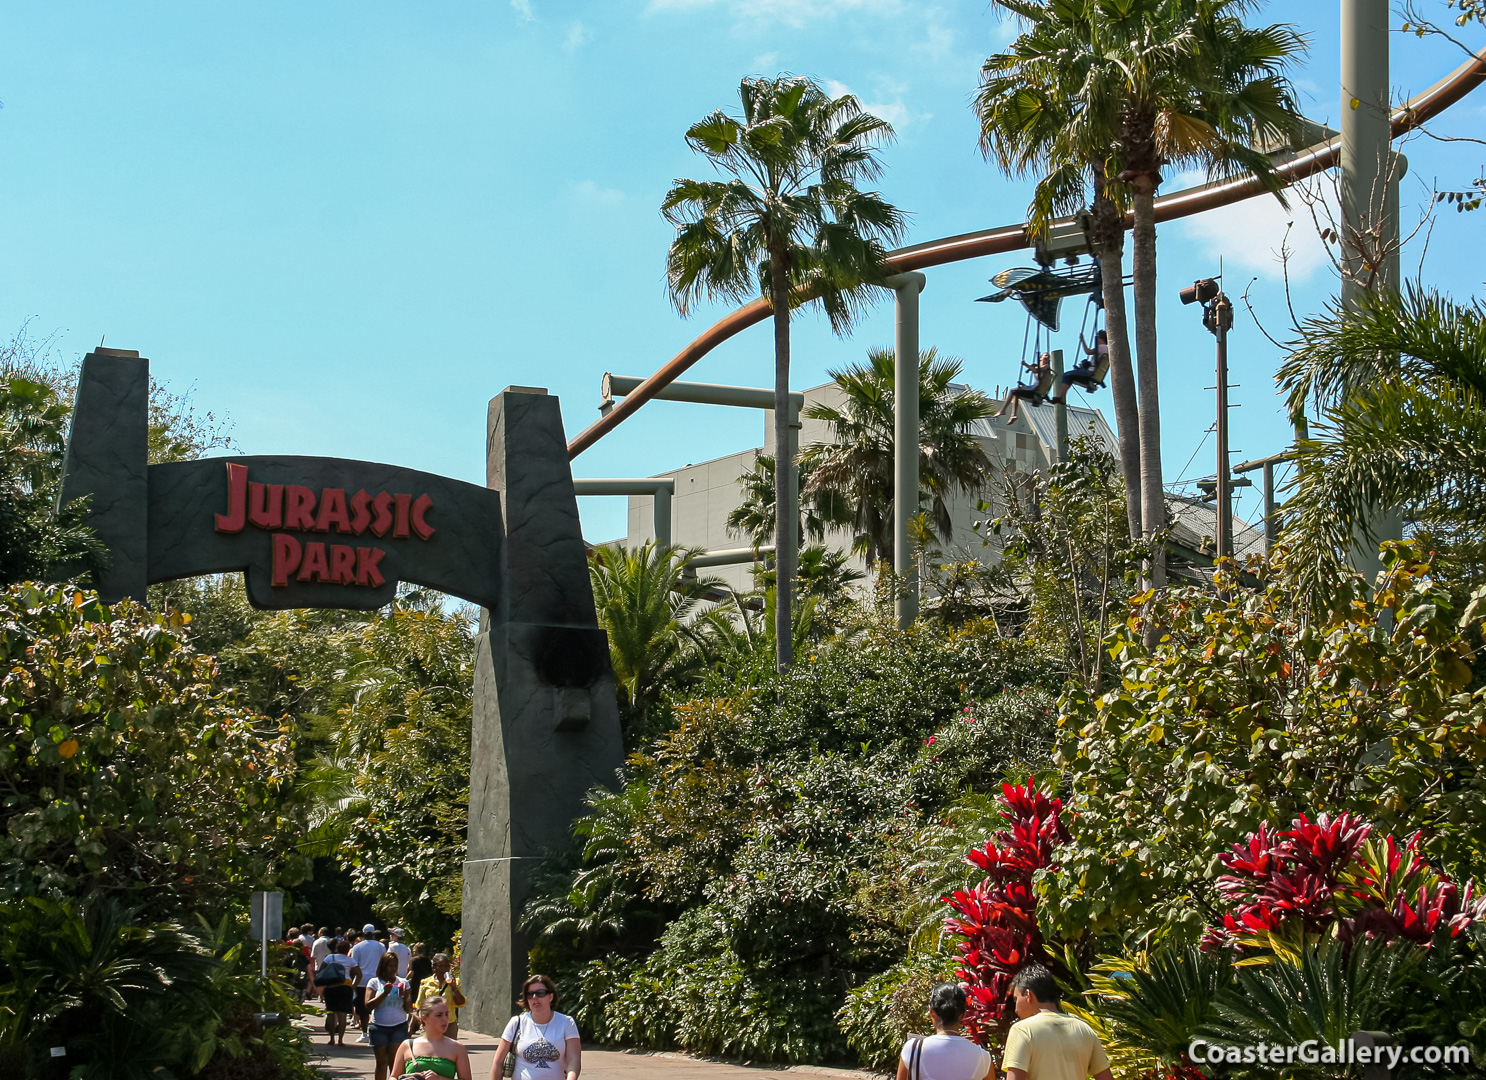 Jurassic Park roller coaster